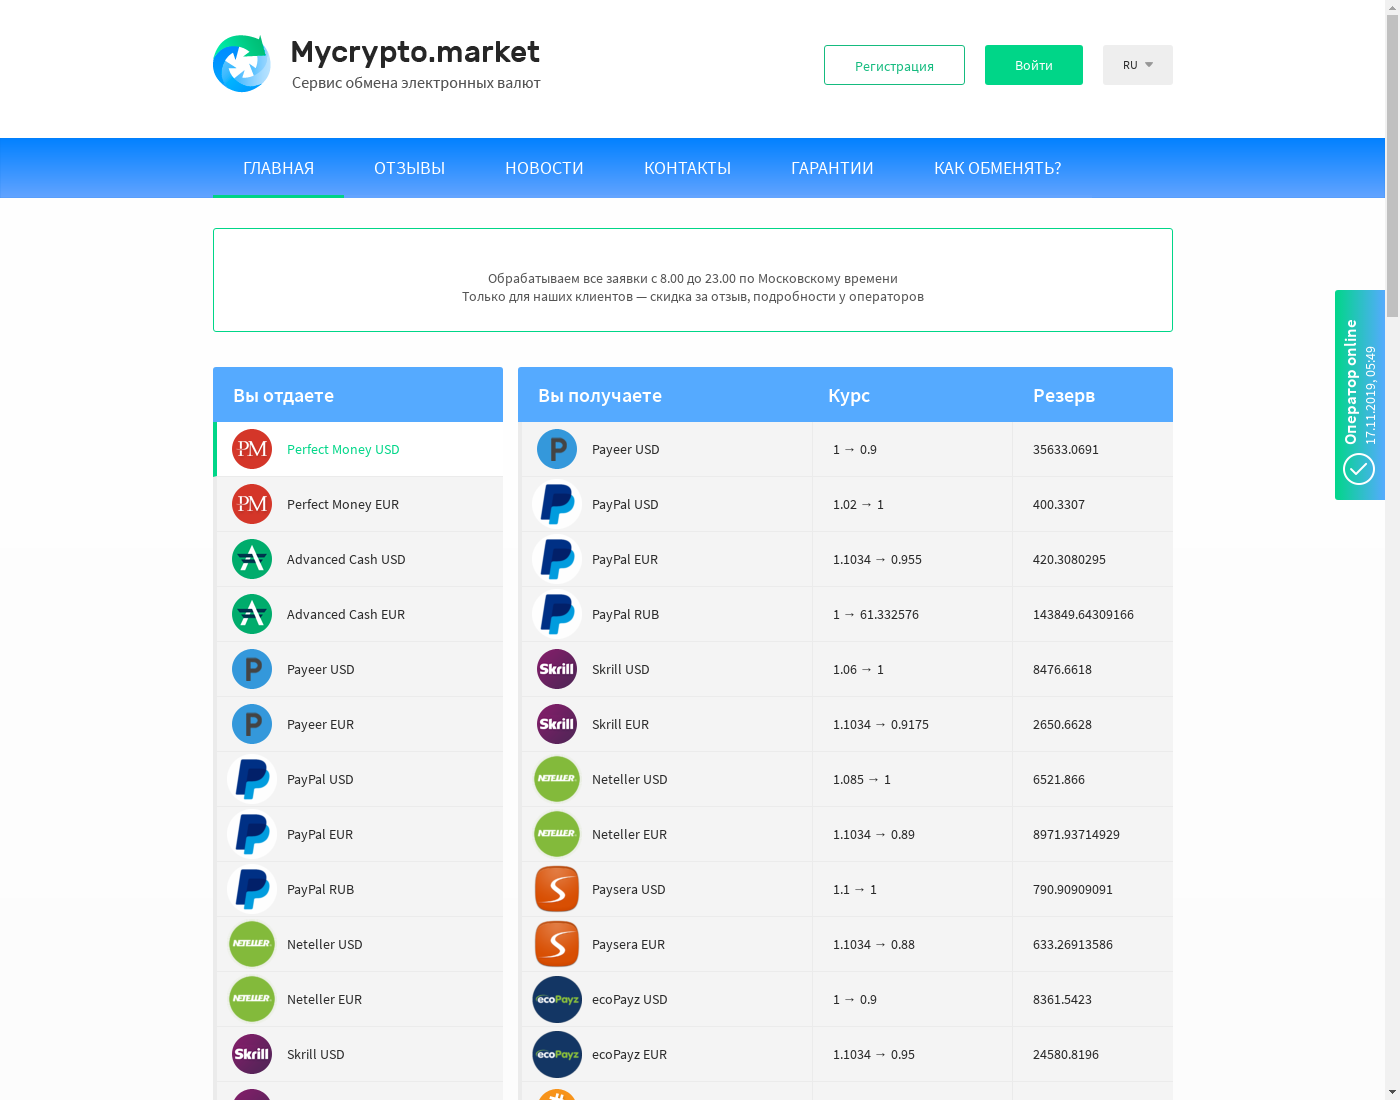 Mycrypto.market интерфейс пользователя: домашняя страничка на языке — Русский